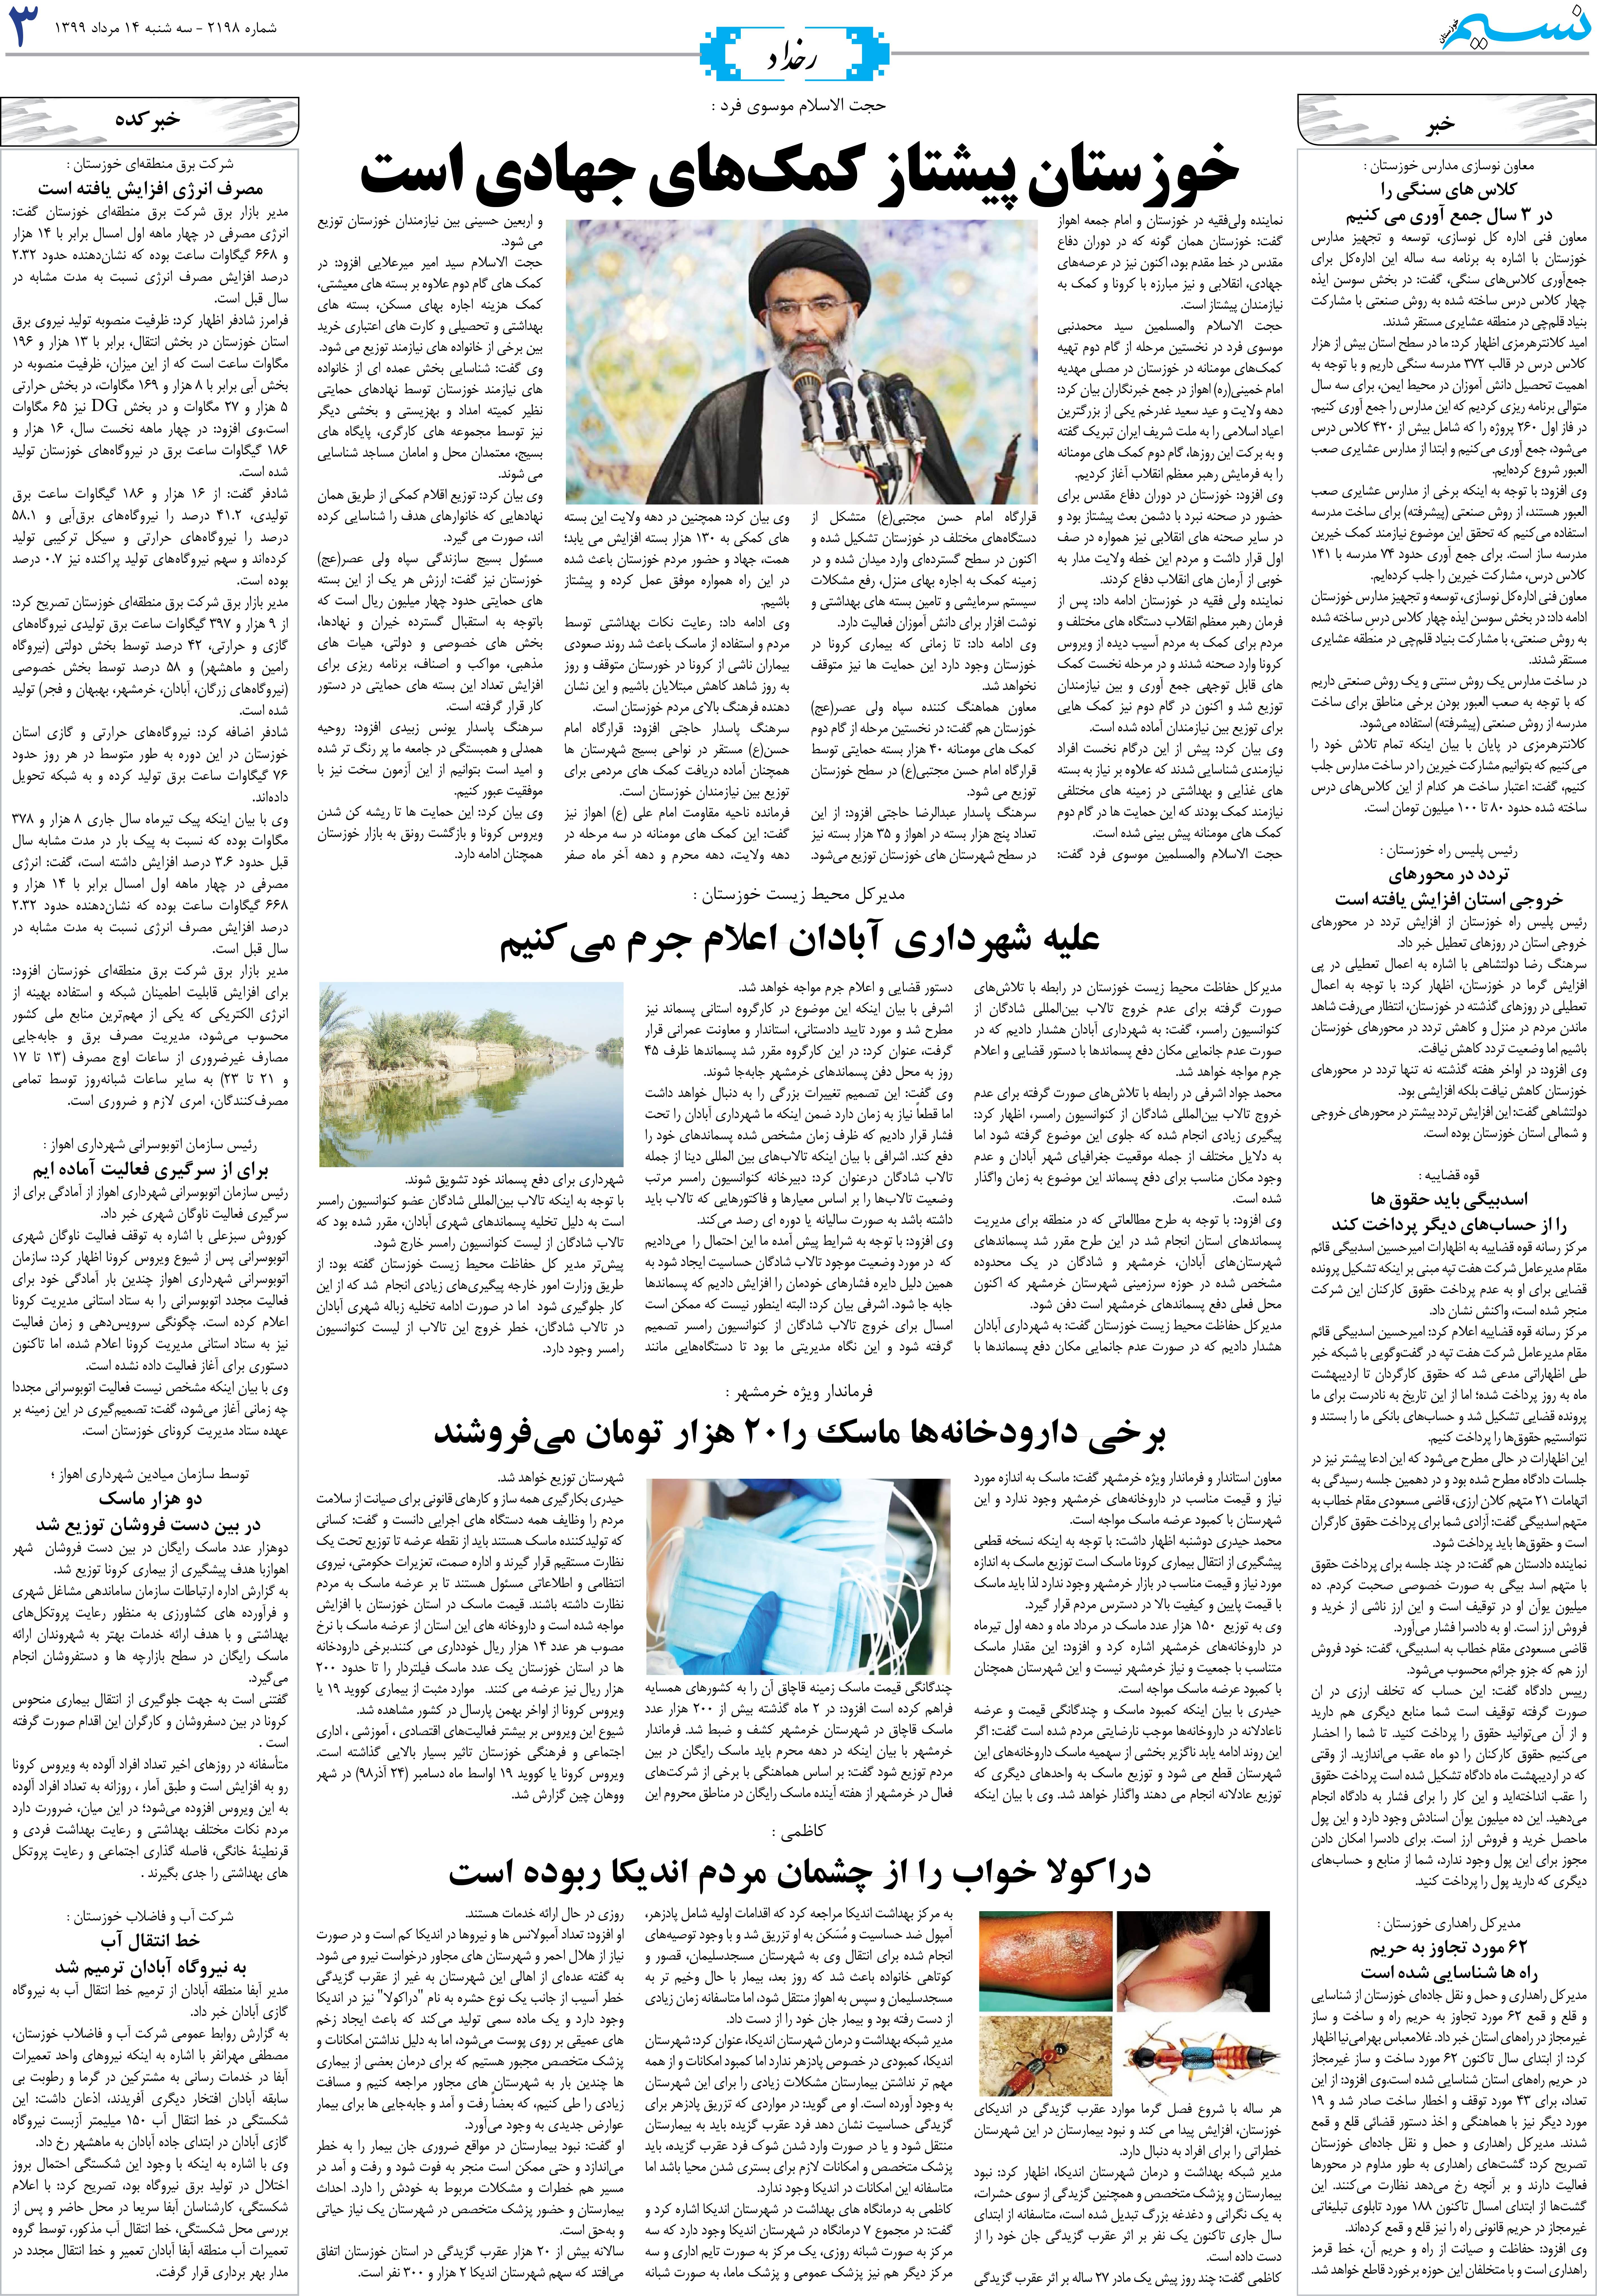 صفحه رخداد روزنامه نسیم شماره 2198